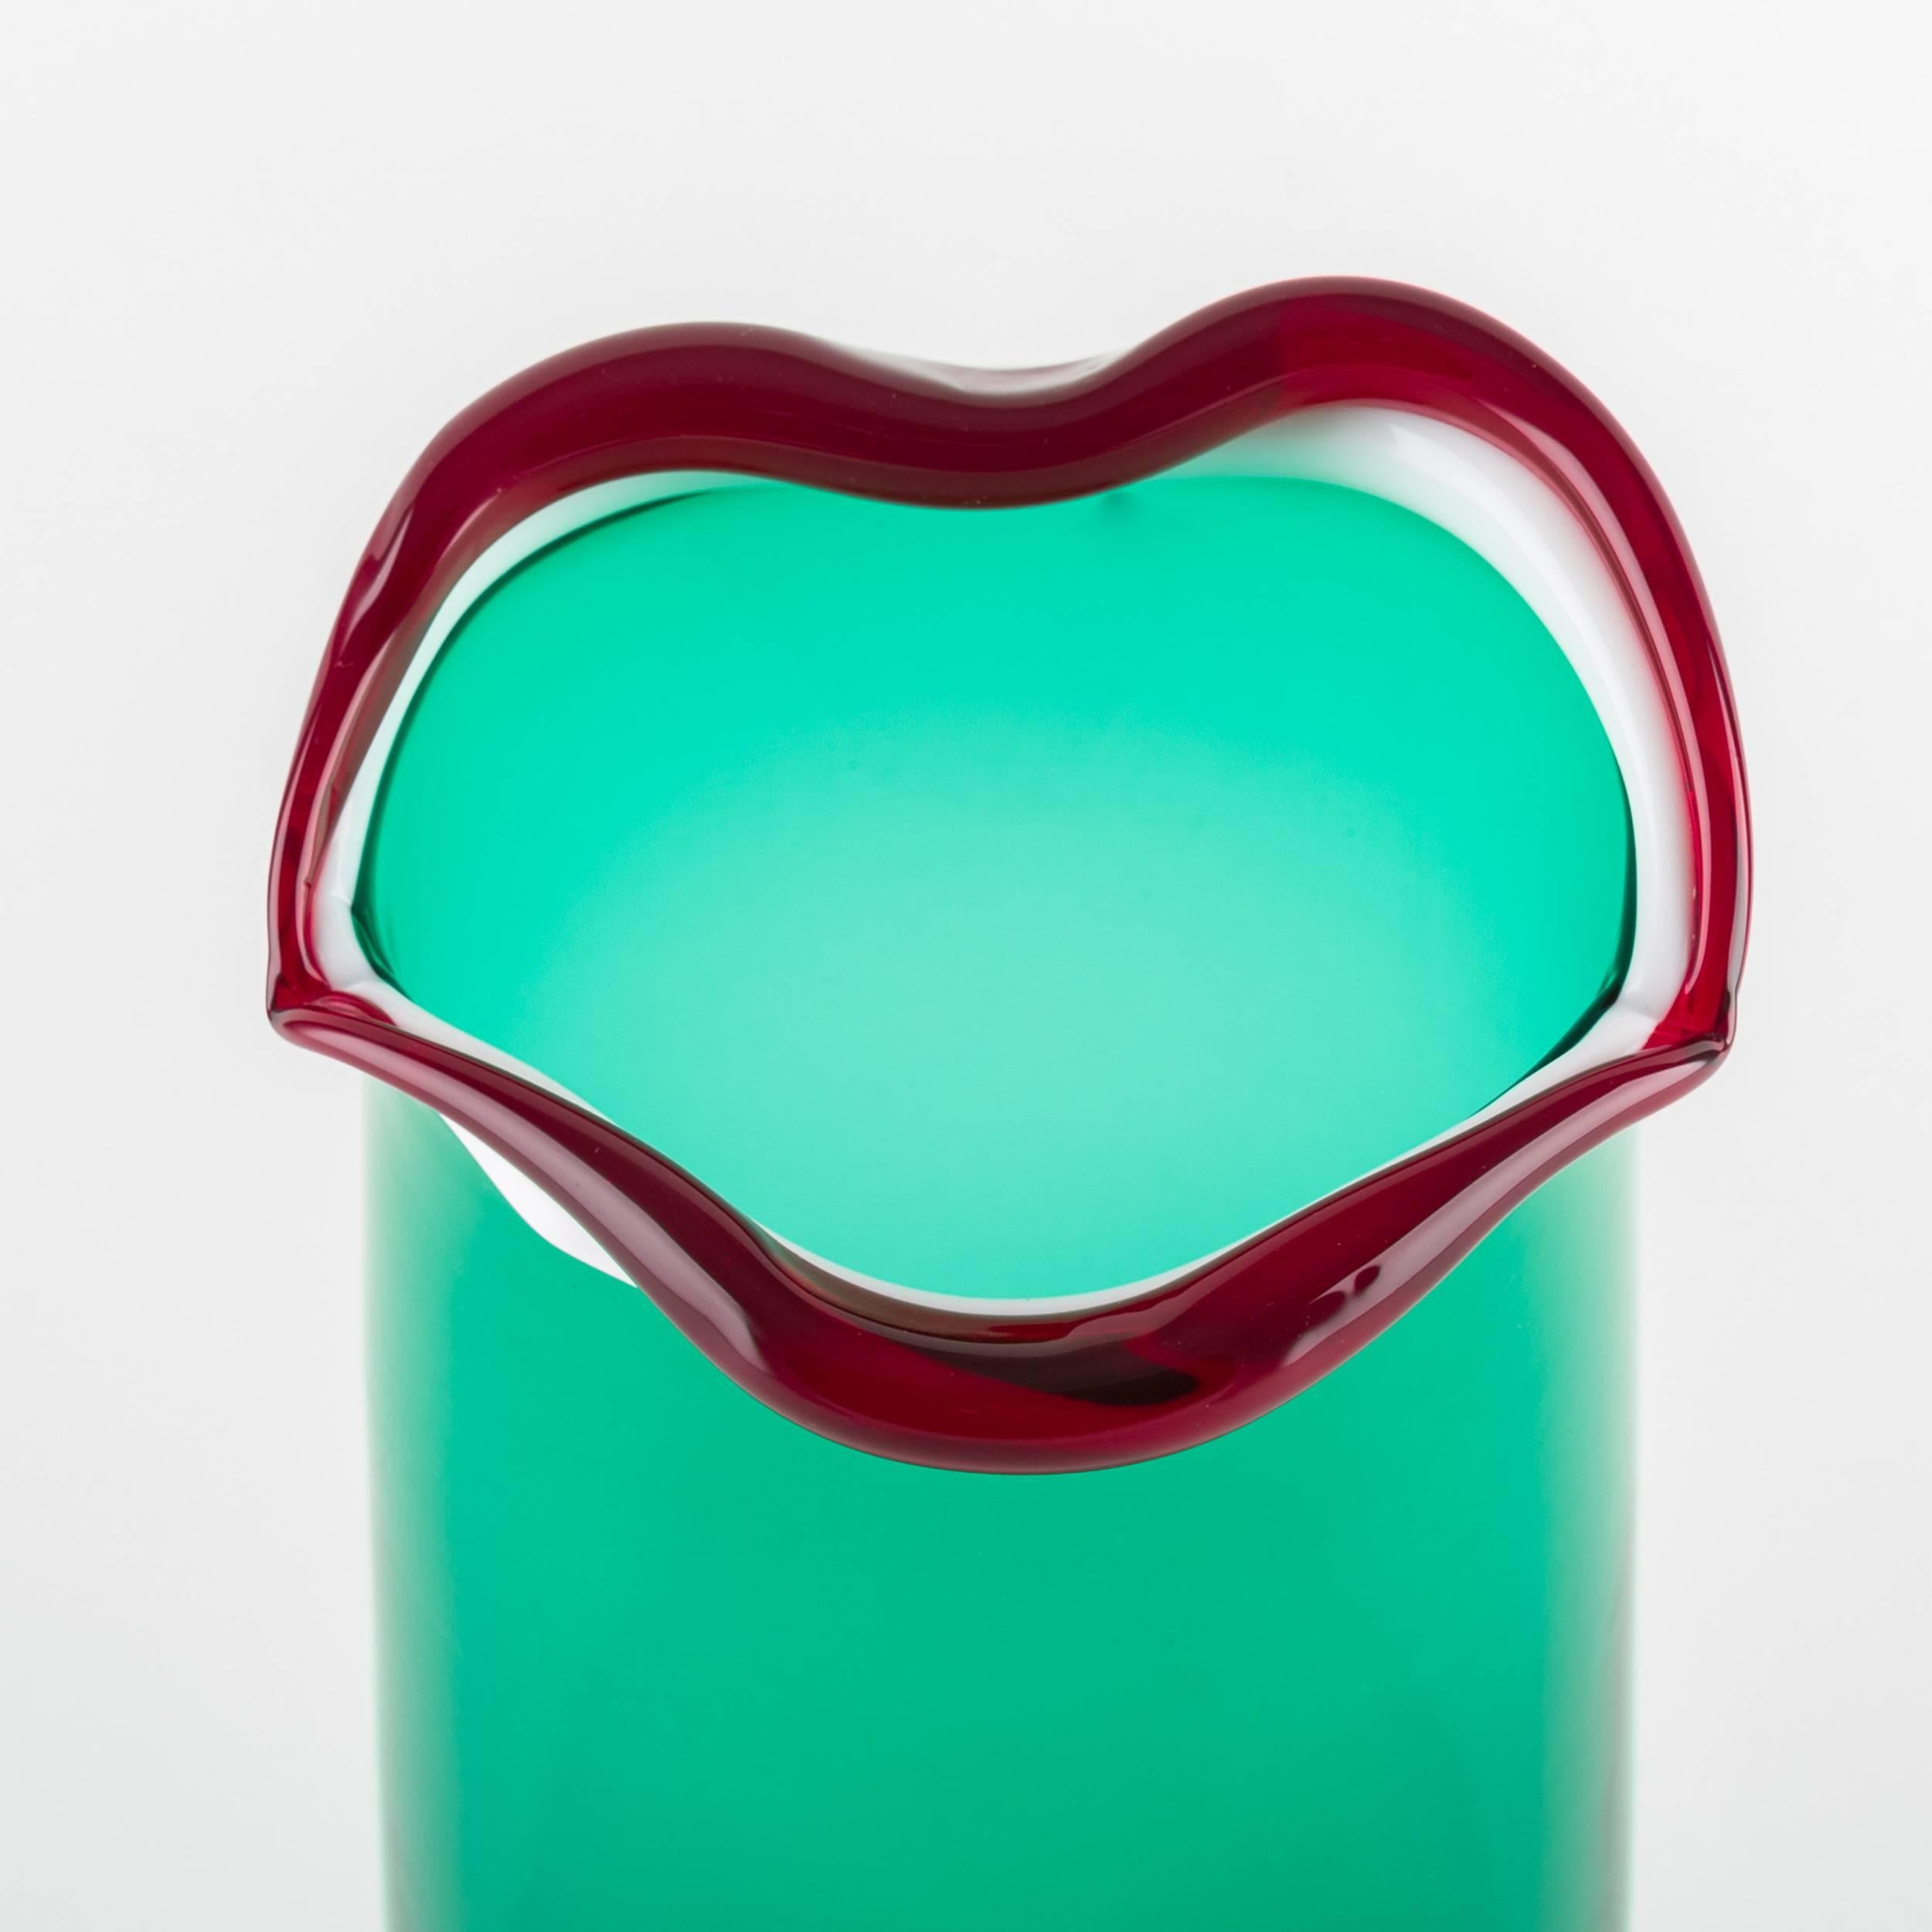 Art Glass Venini Murano Fulvio Bianconi Sorriso 'Smile' Mouth Blown Vase, Green Color